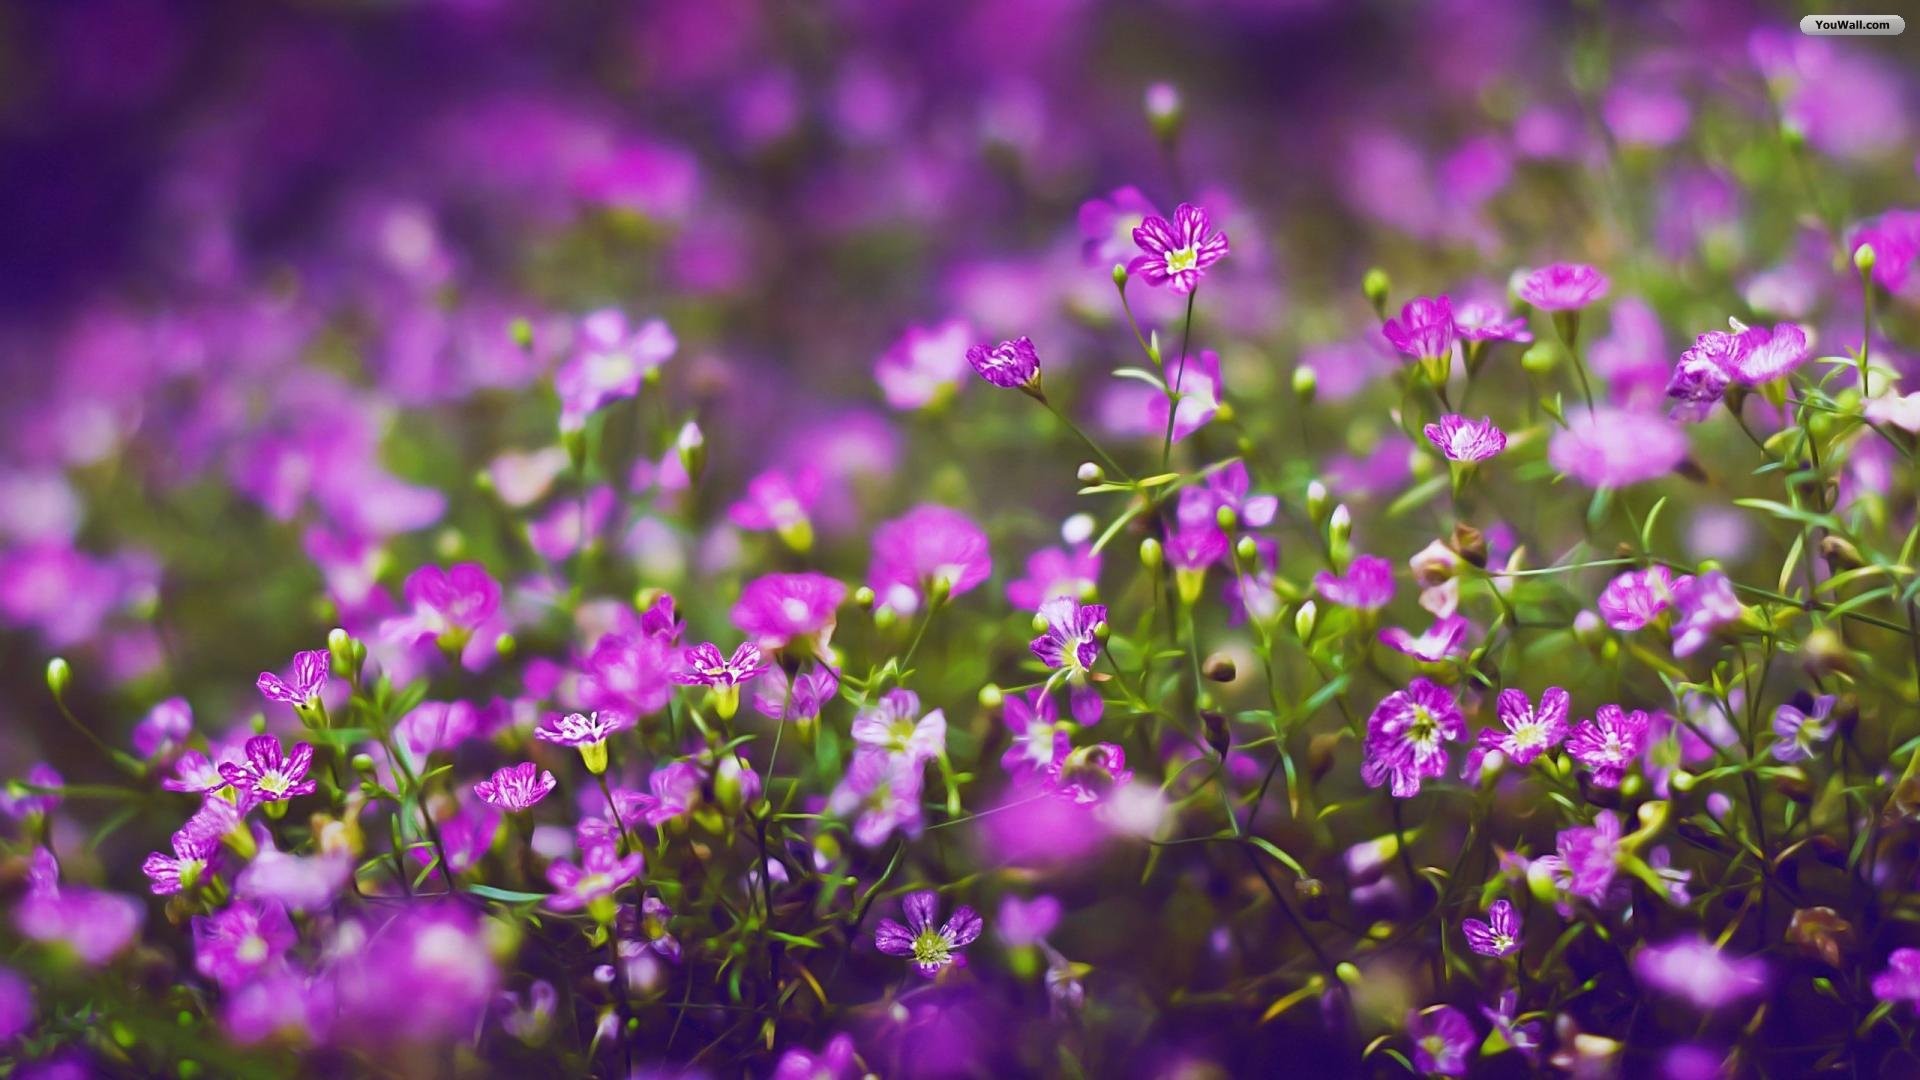 1920x1080 of 18 Beautiful Lavender Purple Flowers HD Wallpaper For Desktop